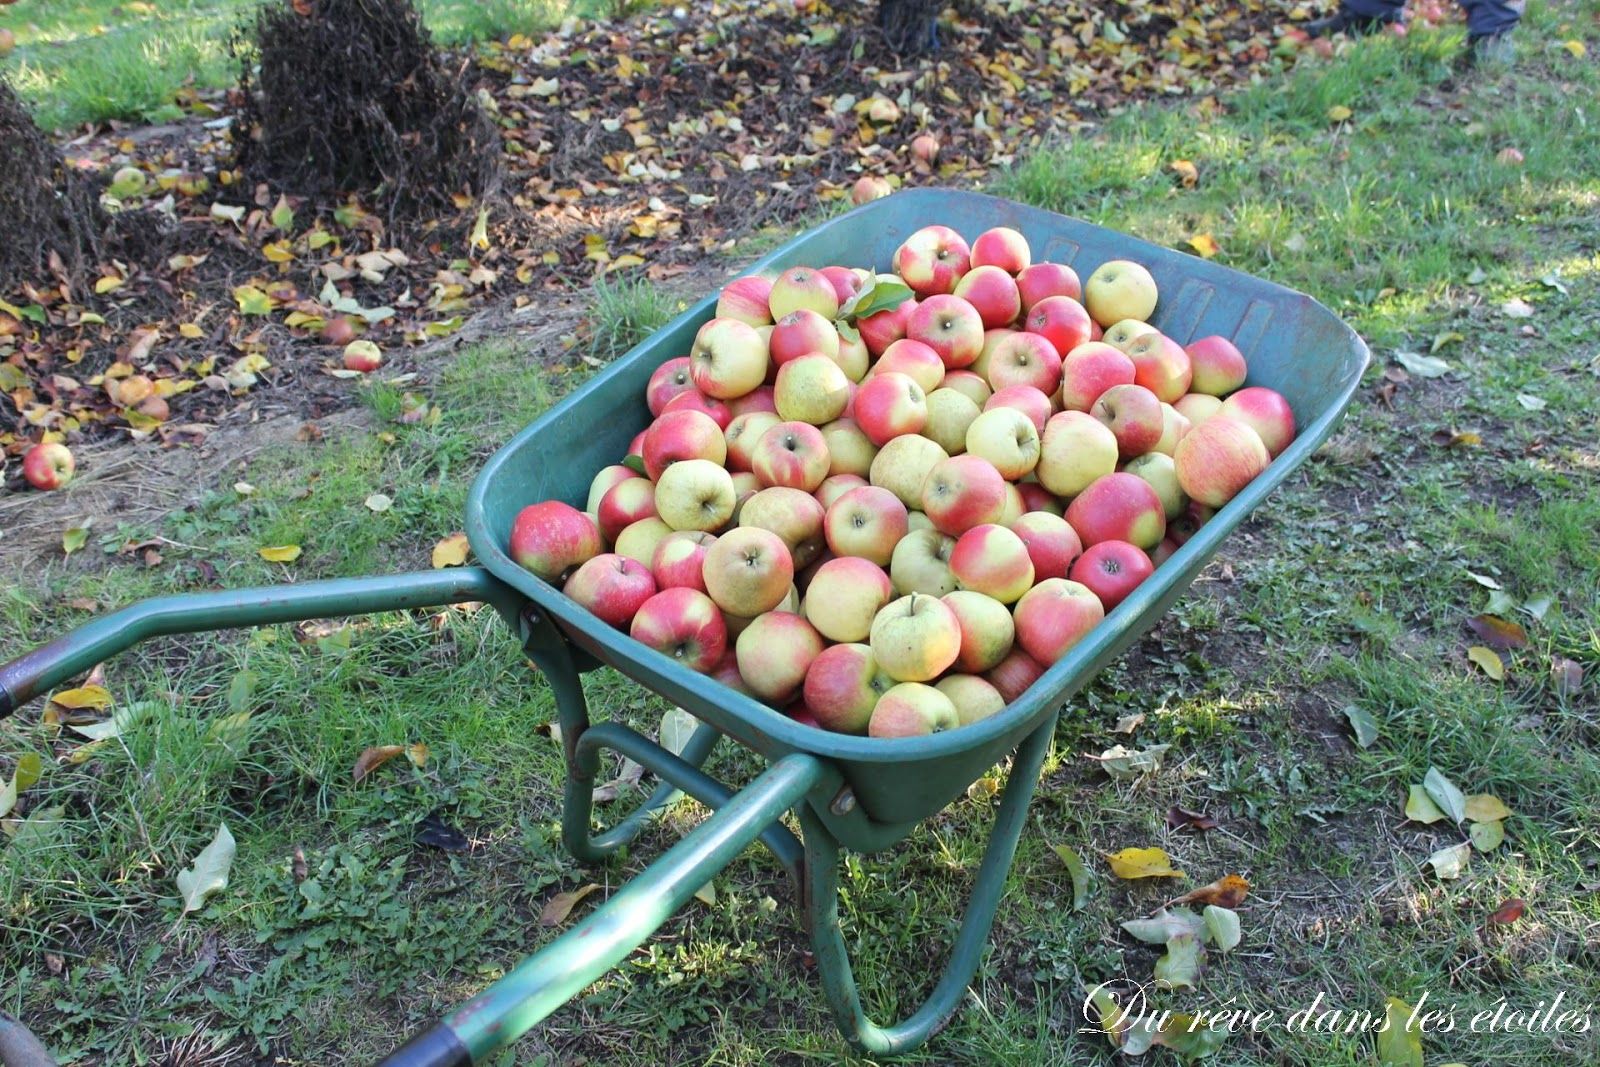 Jardin De Gally Inspirant La Cueillette De Gally 4 Dernier Week End Pour Les Pommes